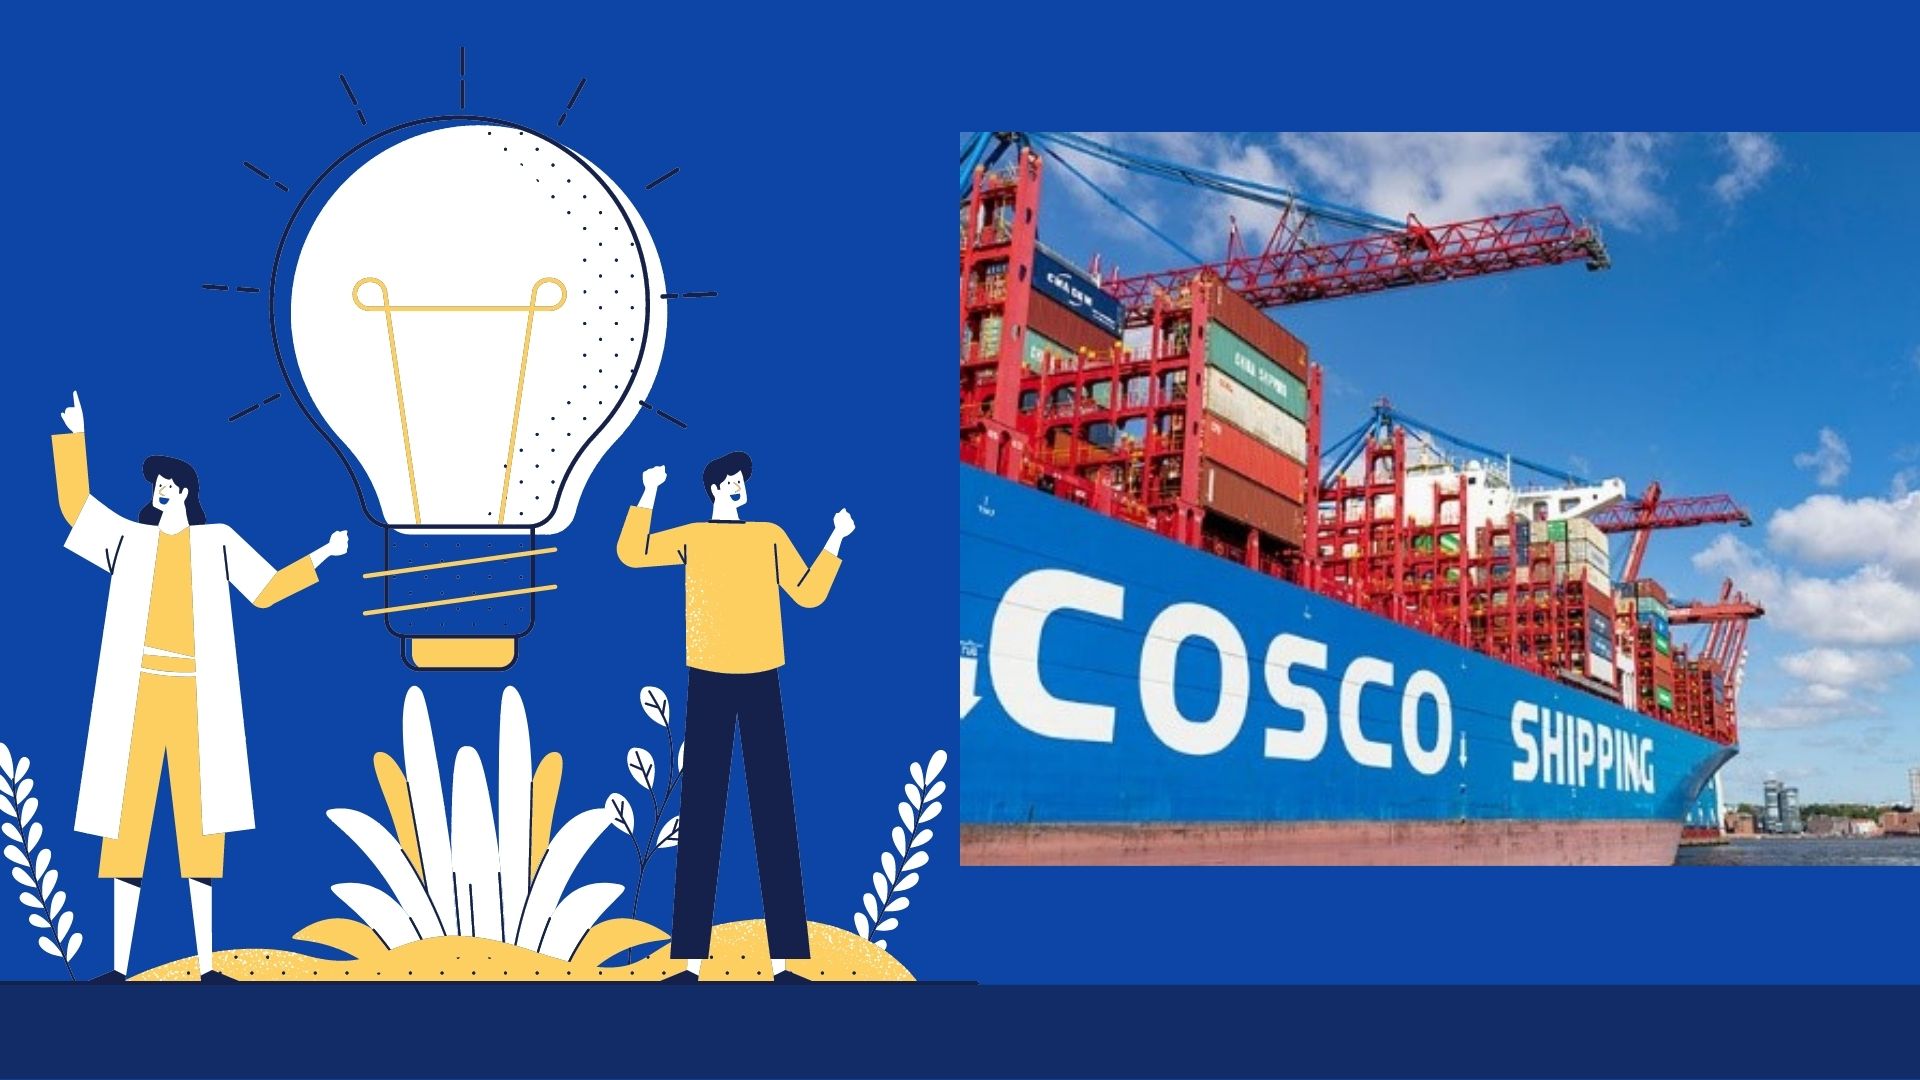 hãng tàu cosco shipping thứ 3 trong top 15 hãng tàu lớn nhất thế giới 